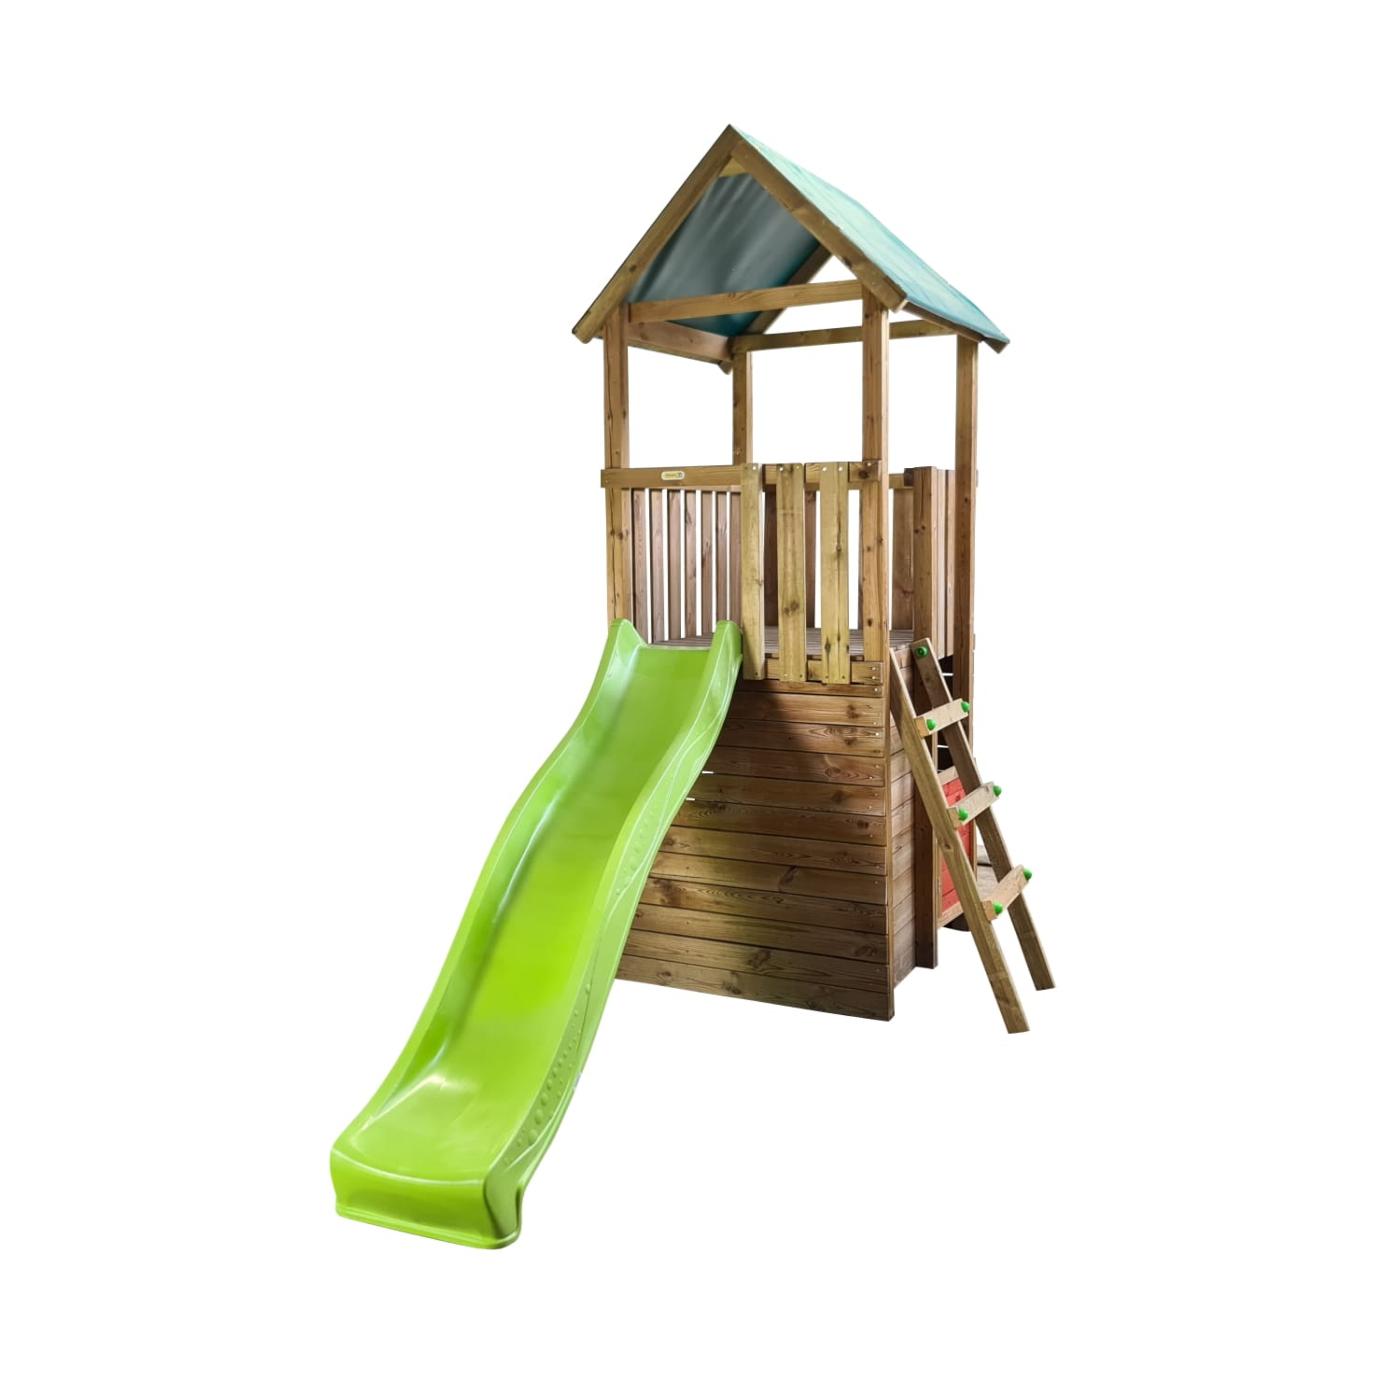 Parque infantil MASGAMES TIBIDABO torre de madera con tobogán y techo de lona verde